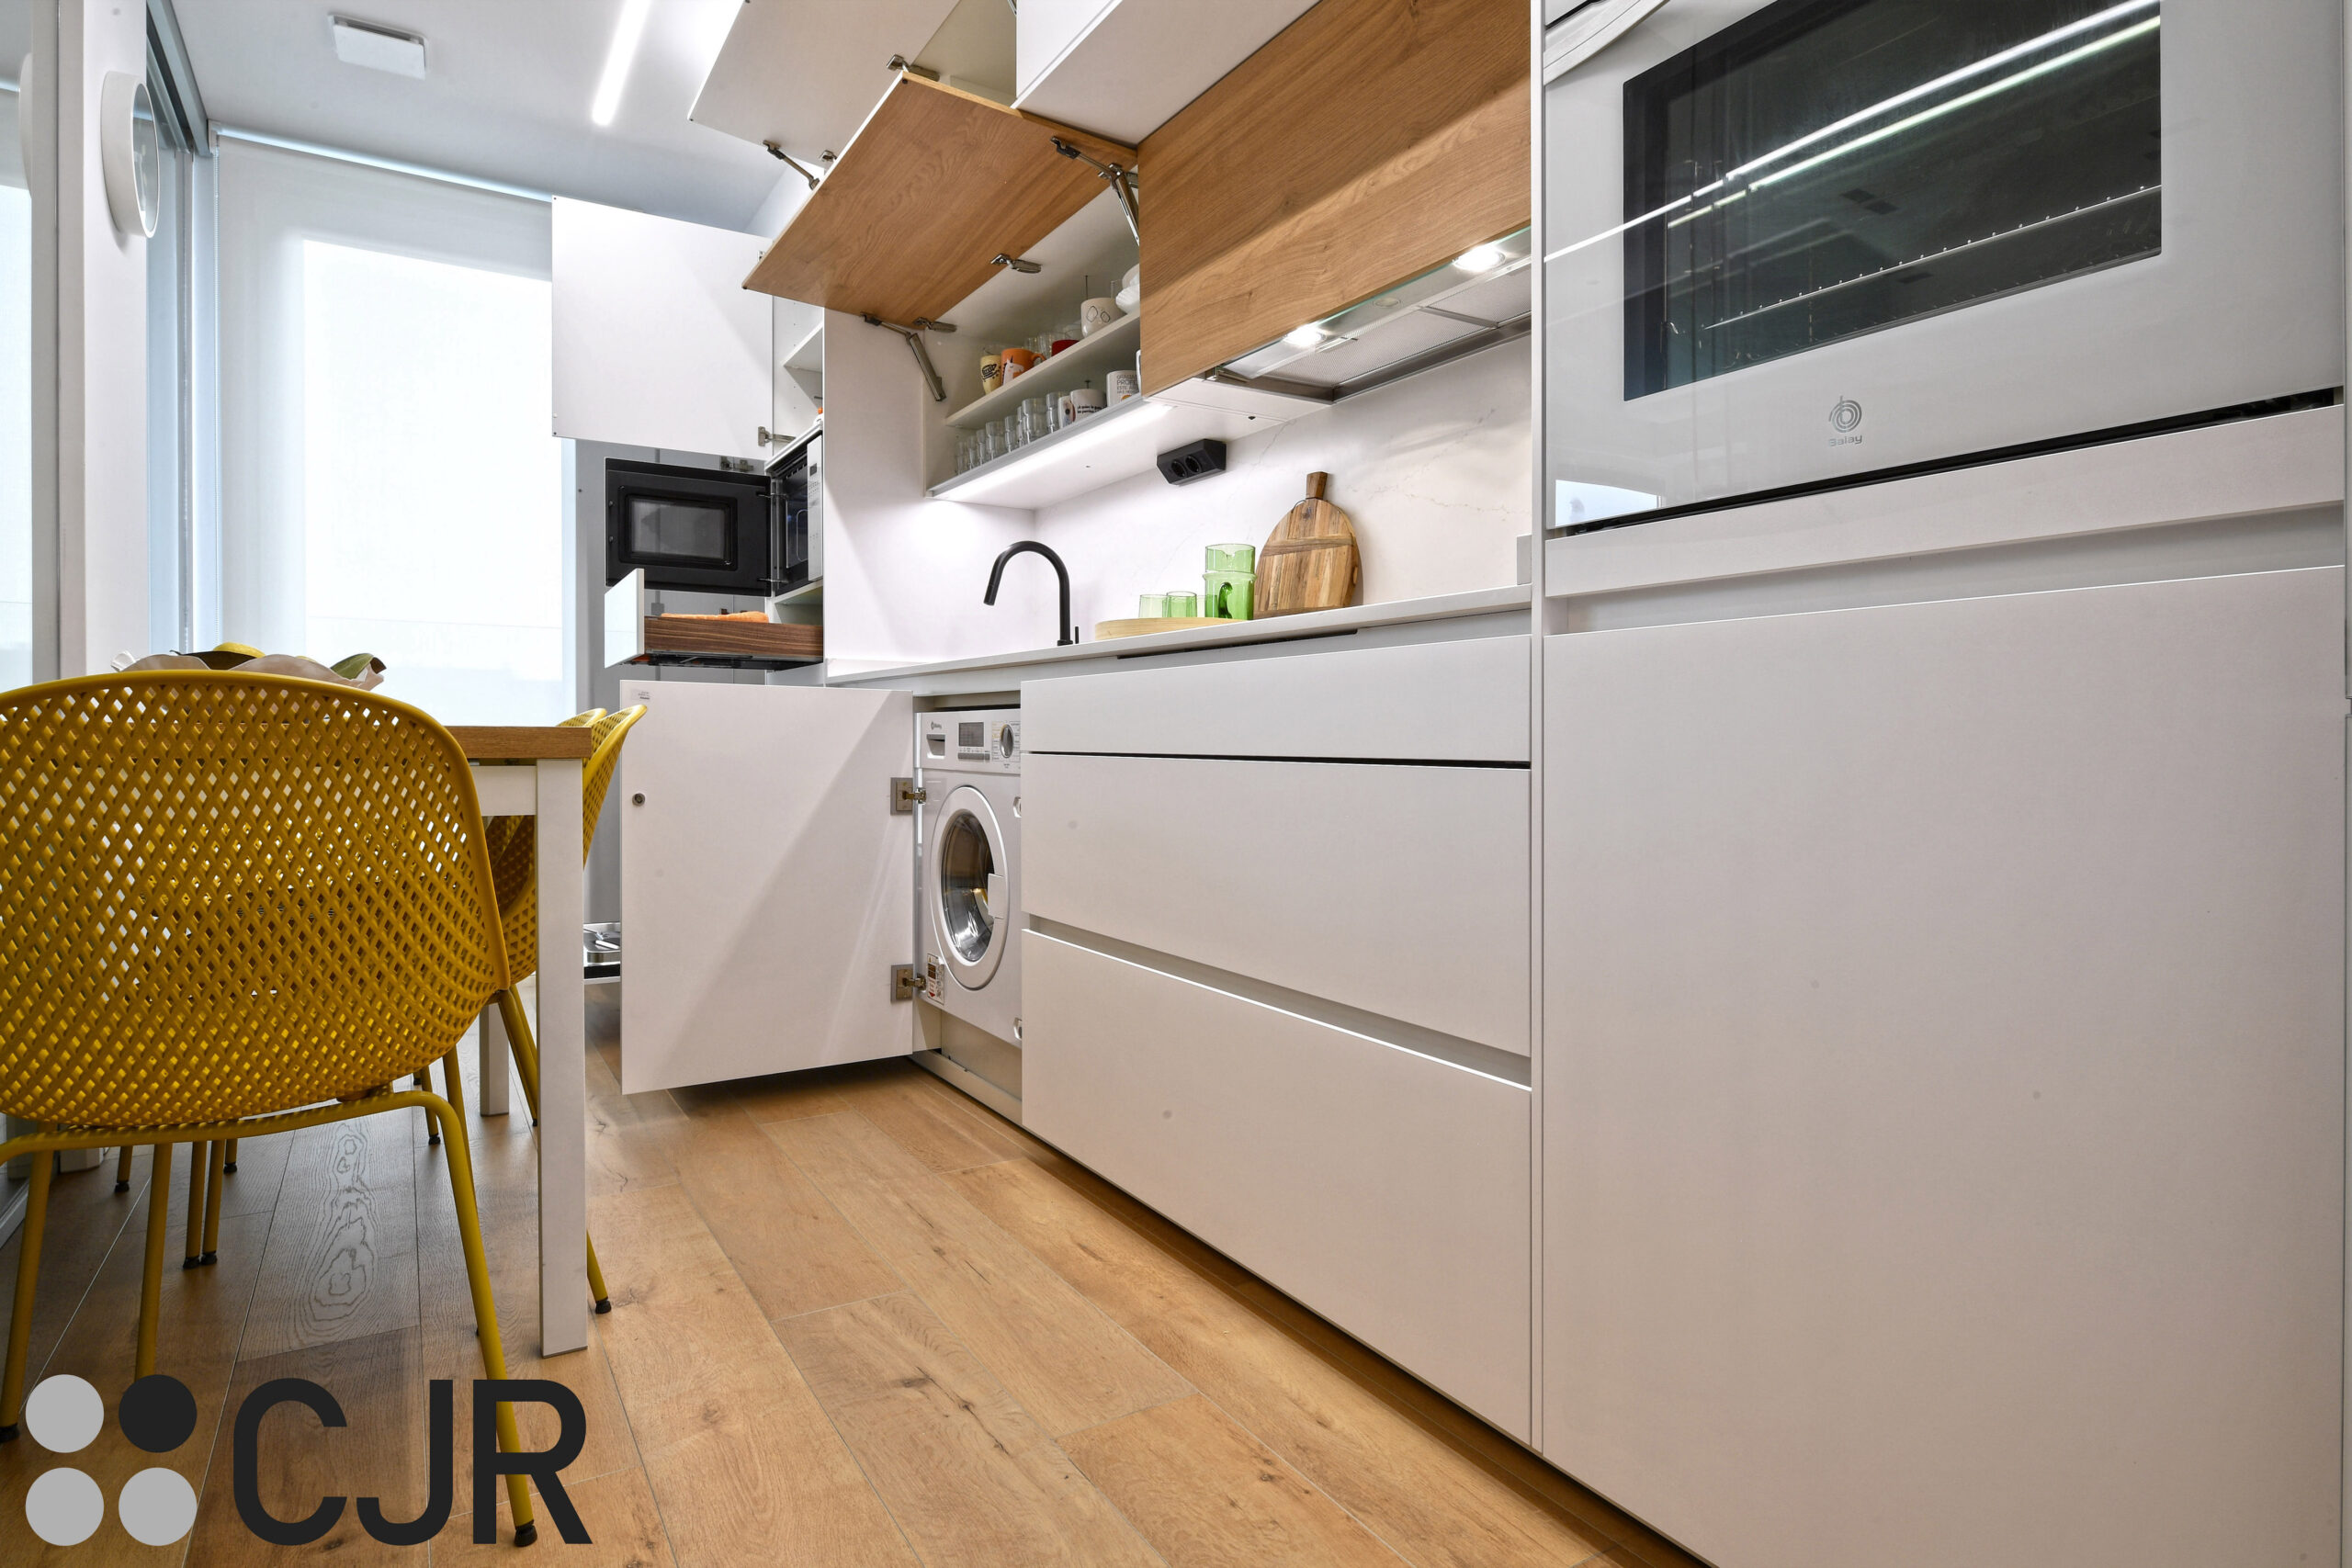 lavadora integrada en la cocina blanca y madera semiabierta cocinas cjr